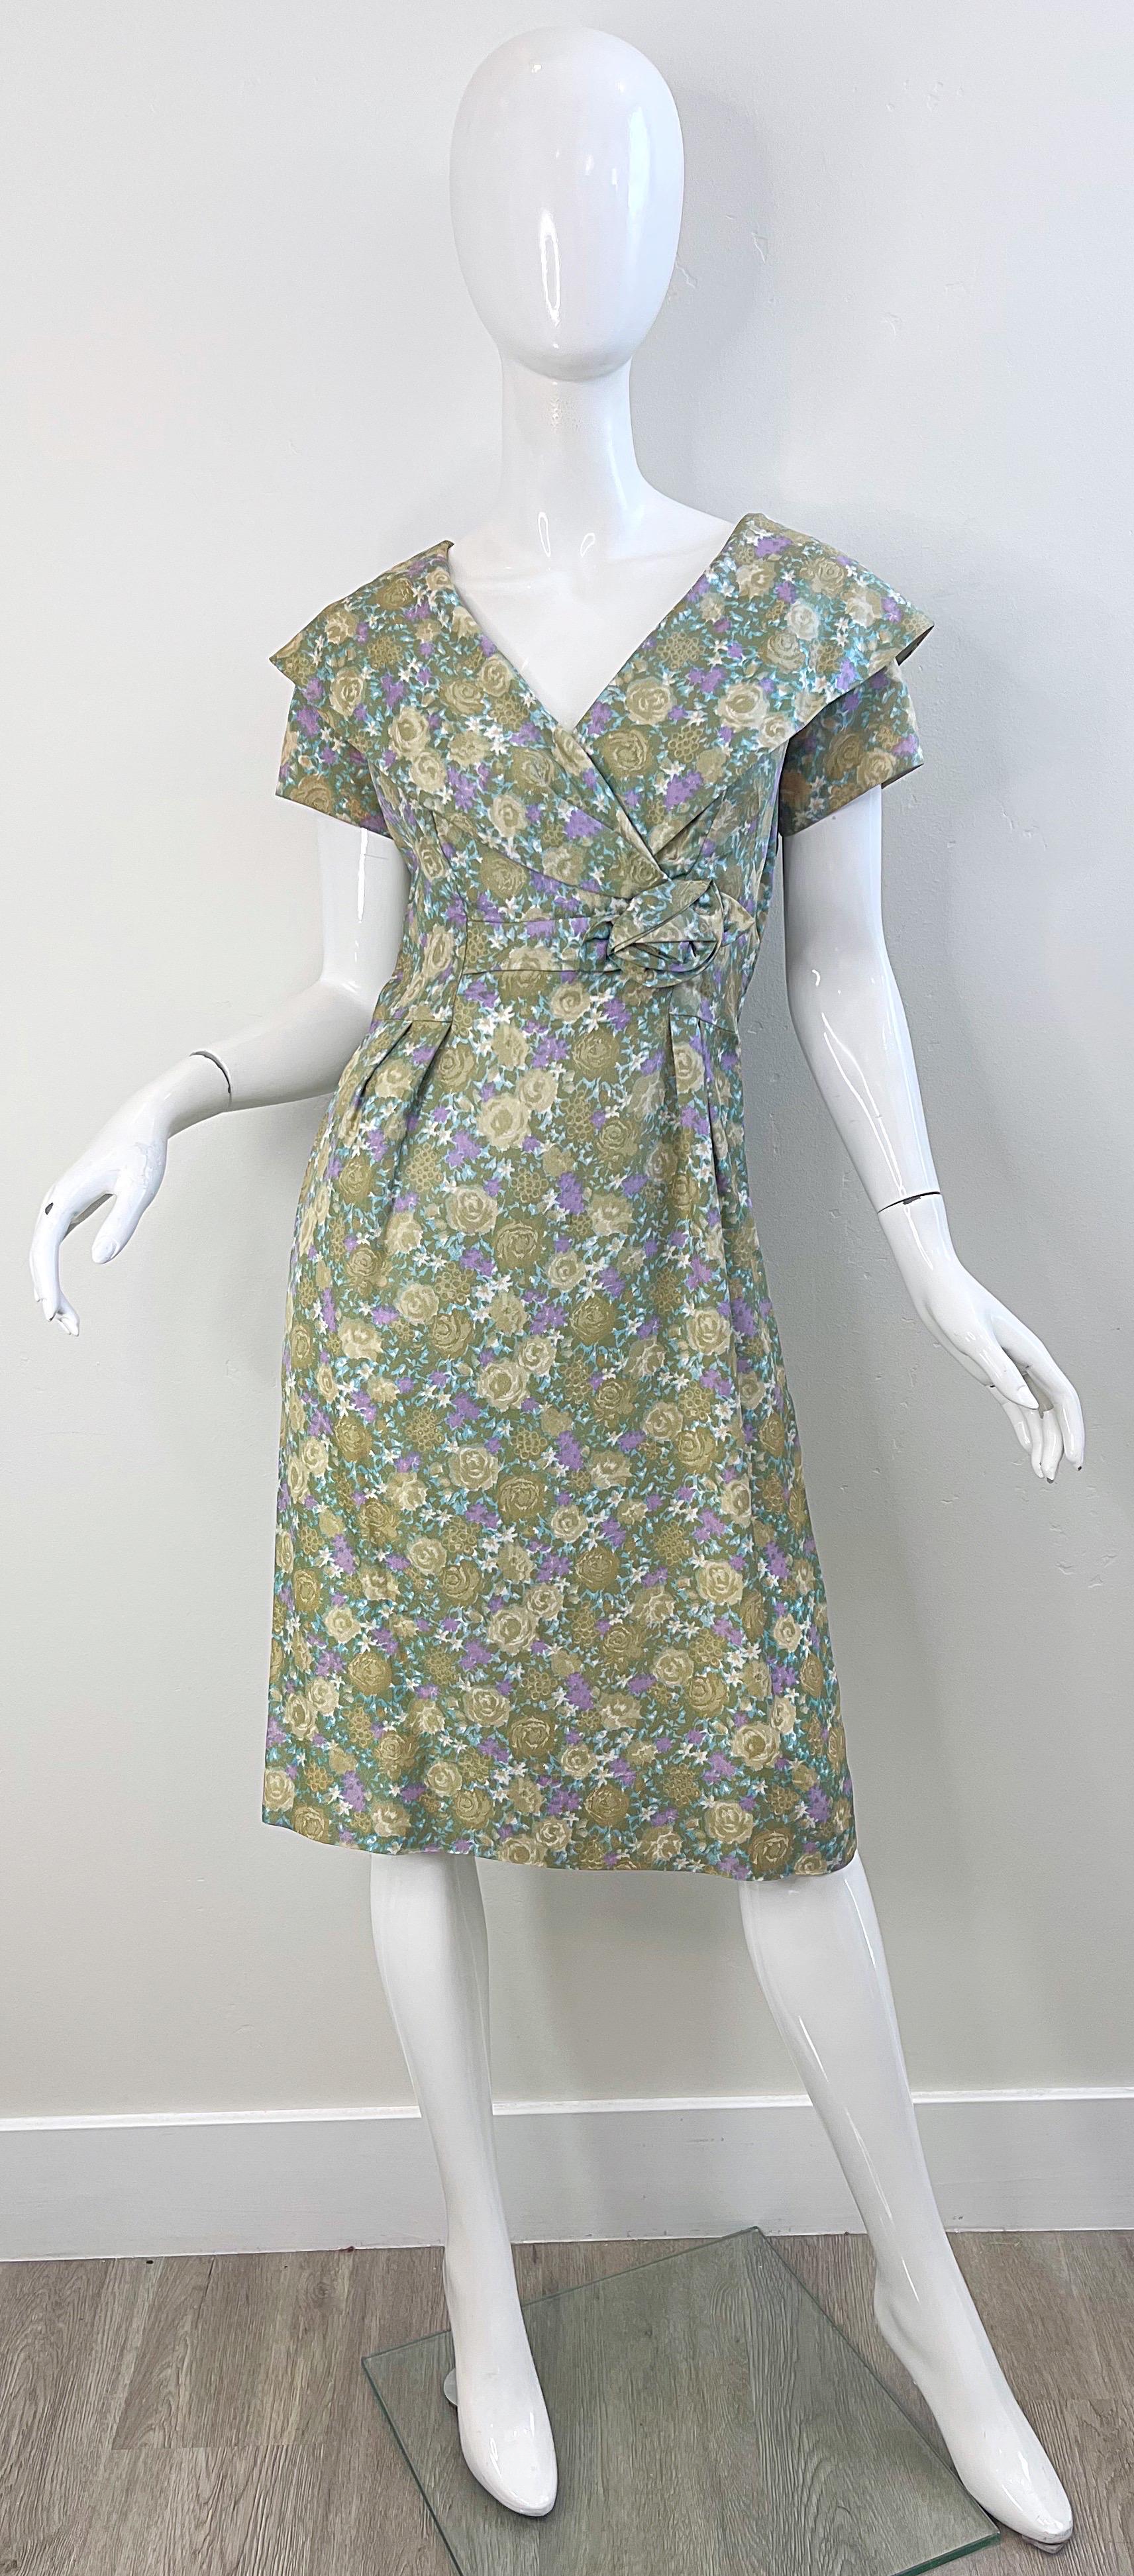 Schönes 1950er Jahre Demi Couture Schalkragen Kurzarm Seidenkleid ! Mit Blumendrucken in verschiedenen Grün-, Hellbraun- und Violetttönen Verdeckter Metallreißverschluss am Rücken. Maßgeschneidertes Mieder mit ausladendem Rockteil. Äußerst gut